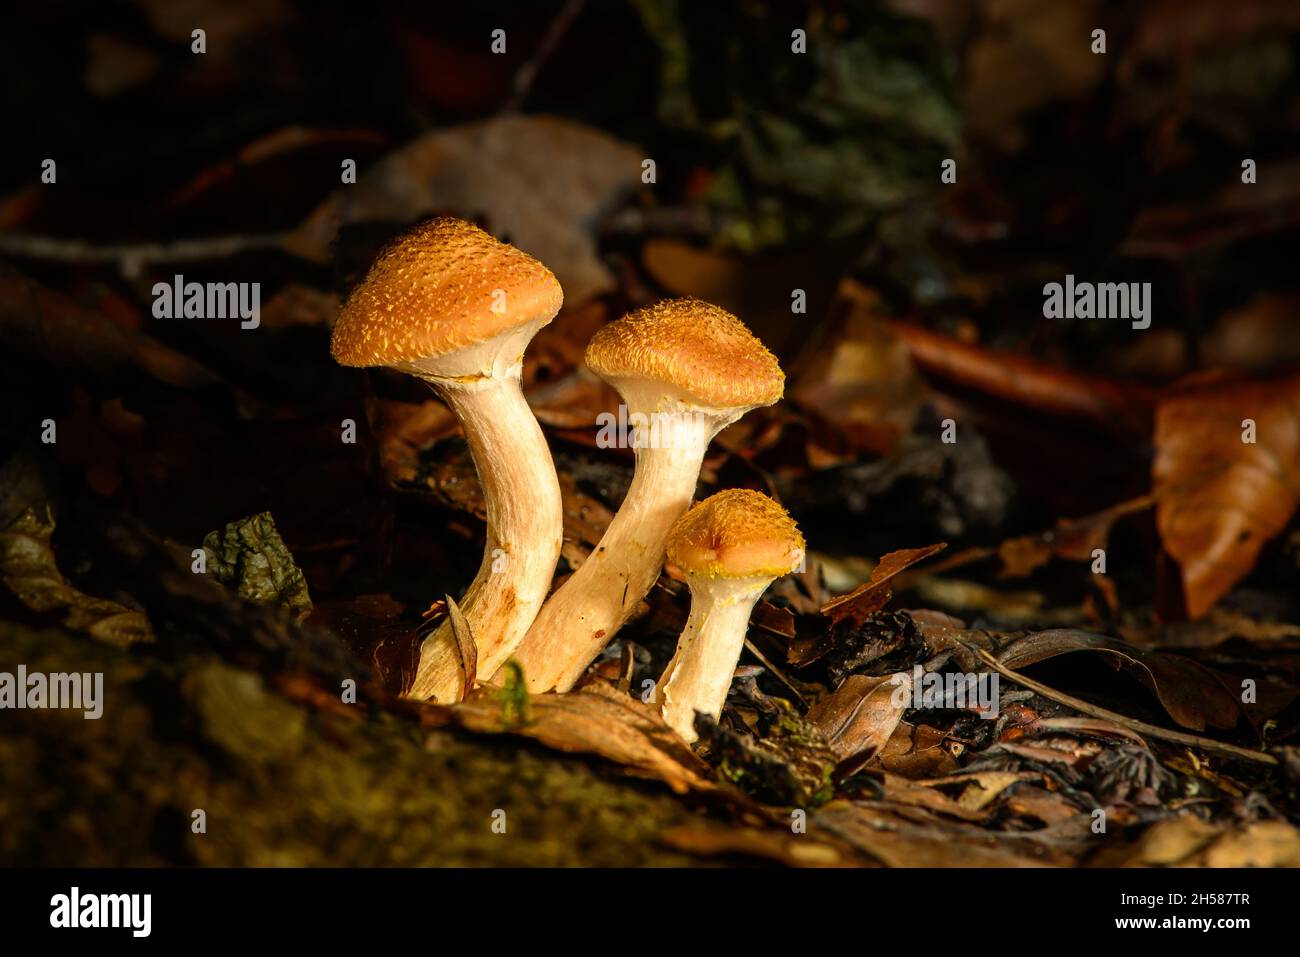 Gruppe von drei kleinen braun-weißen Pilzen in einem dunklen Wald inmitten herbstlicher Blätter Stockfoto